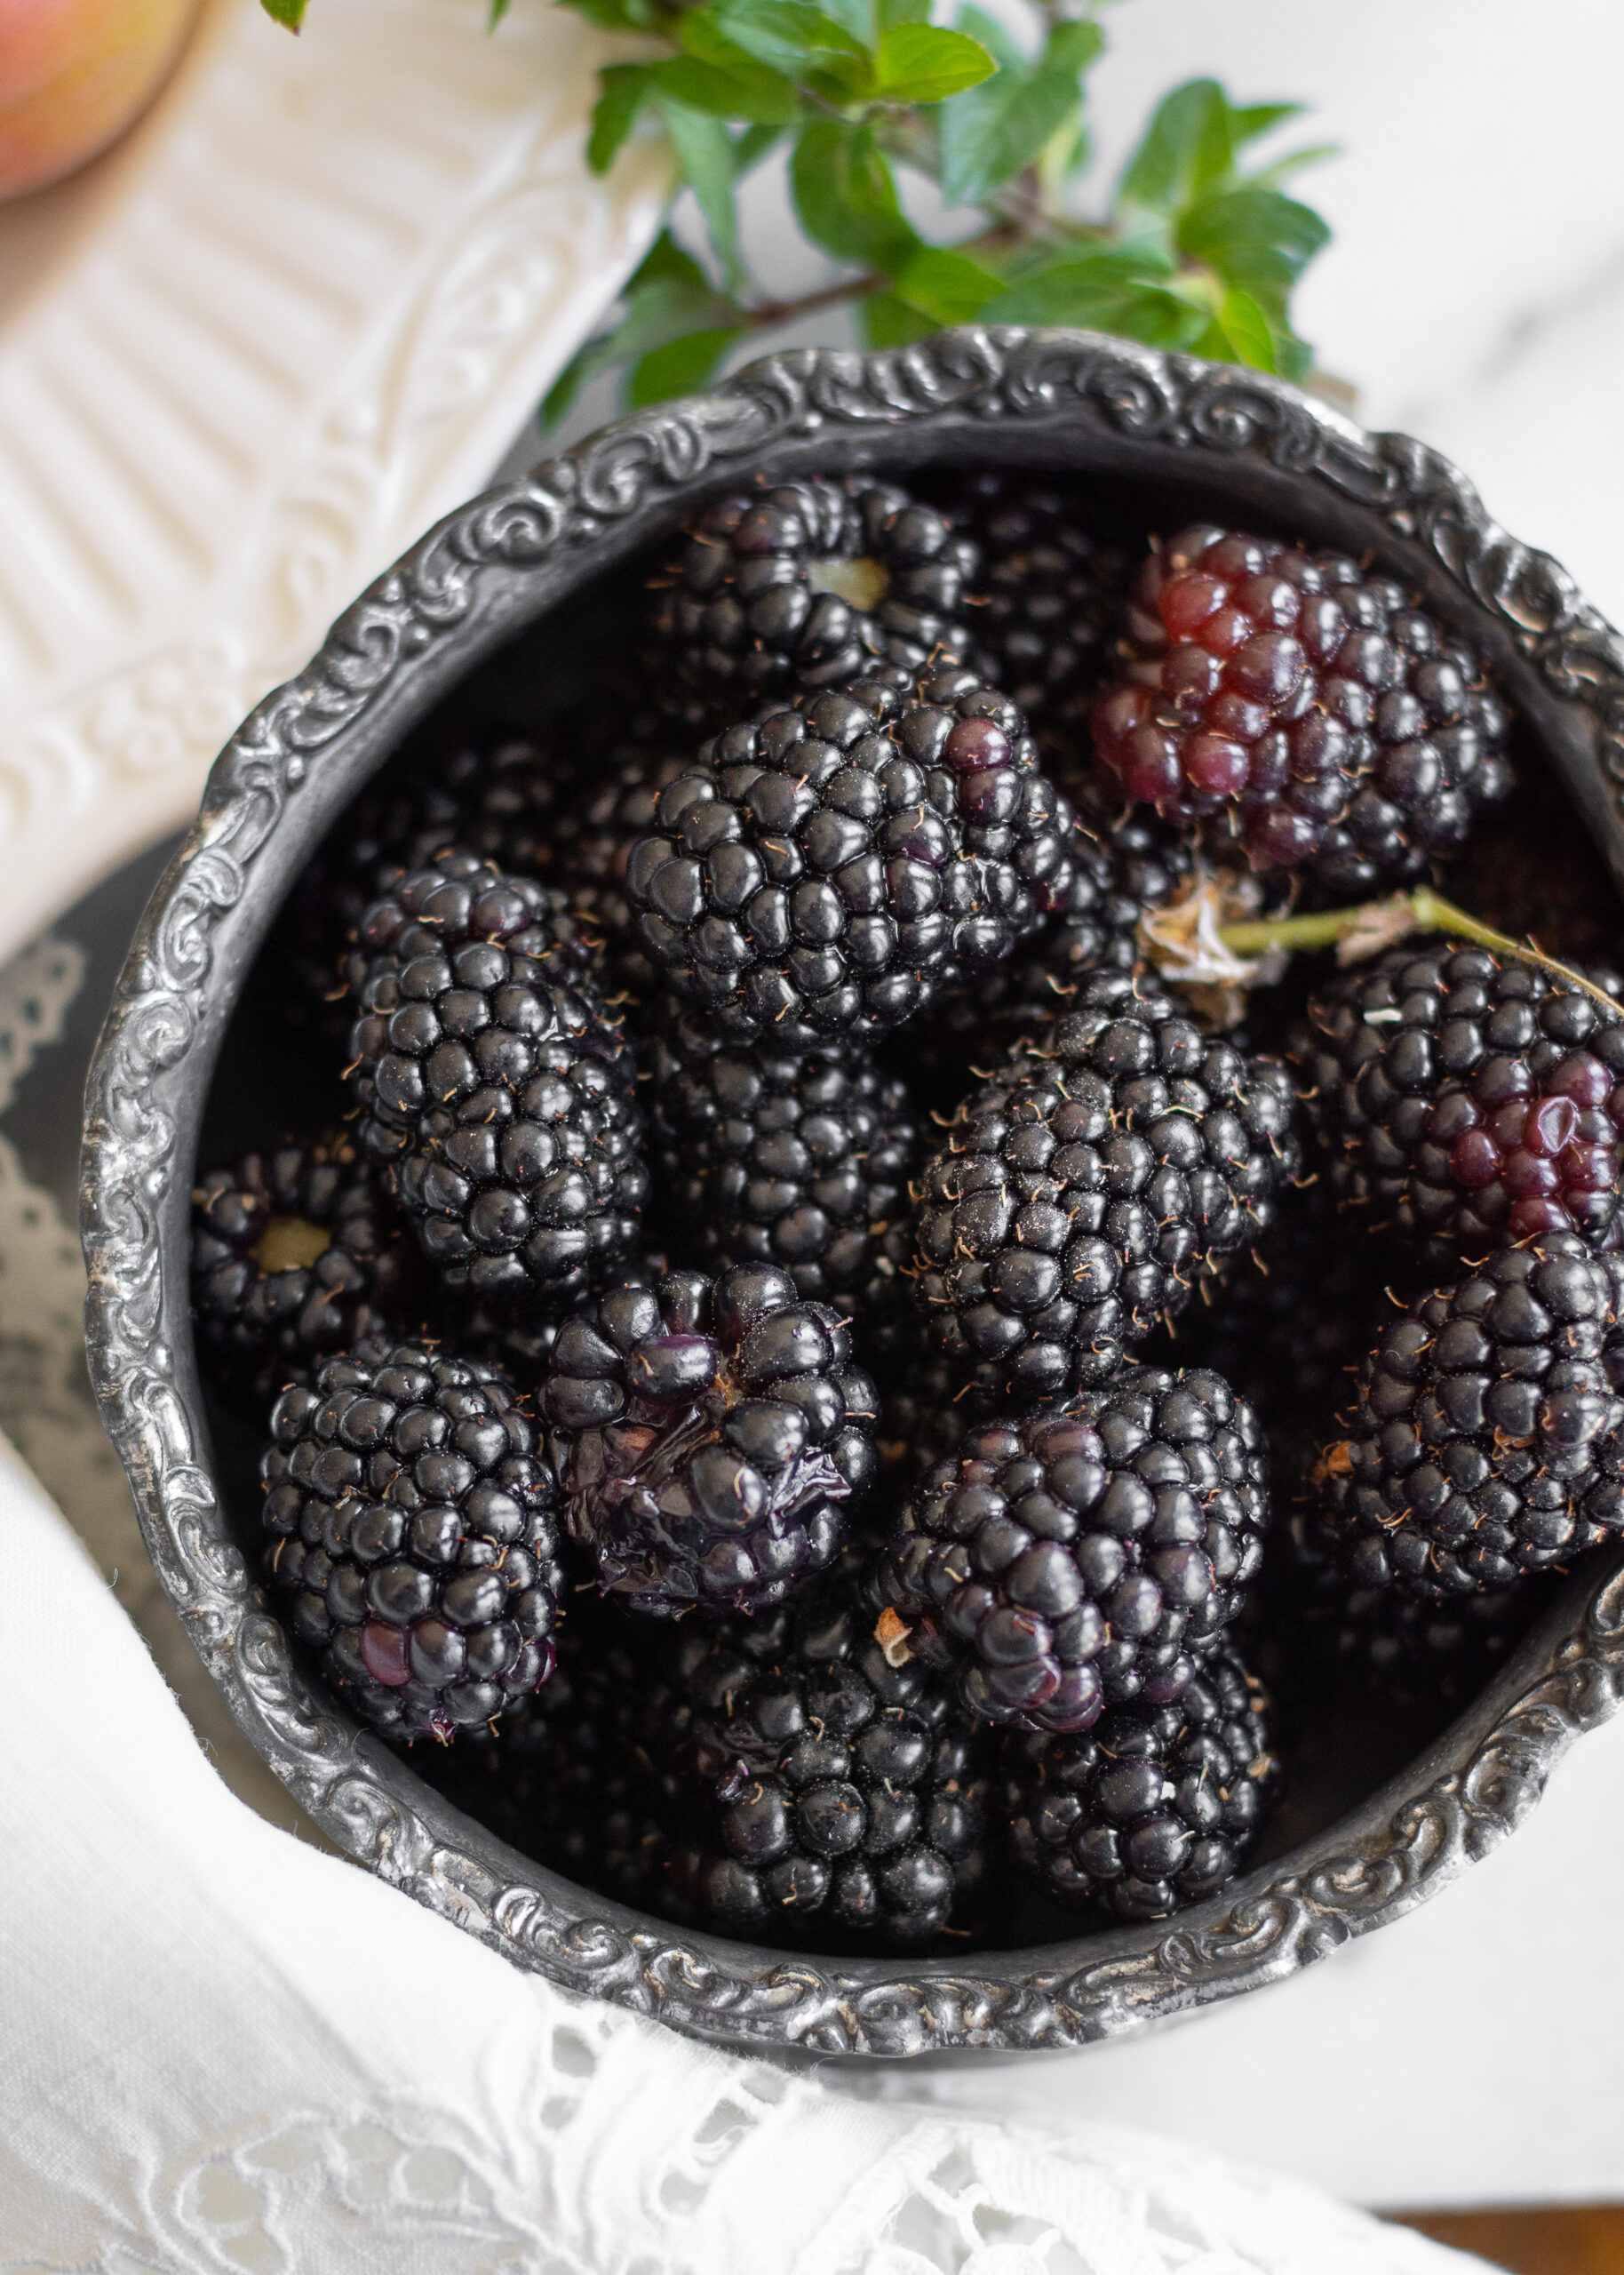 https://theprudenthomemaker.com/wp-content/uploads/2022/05/Blackberries-in-May-The-Prudent-Homemaker-scaled.jpg